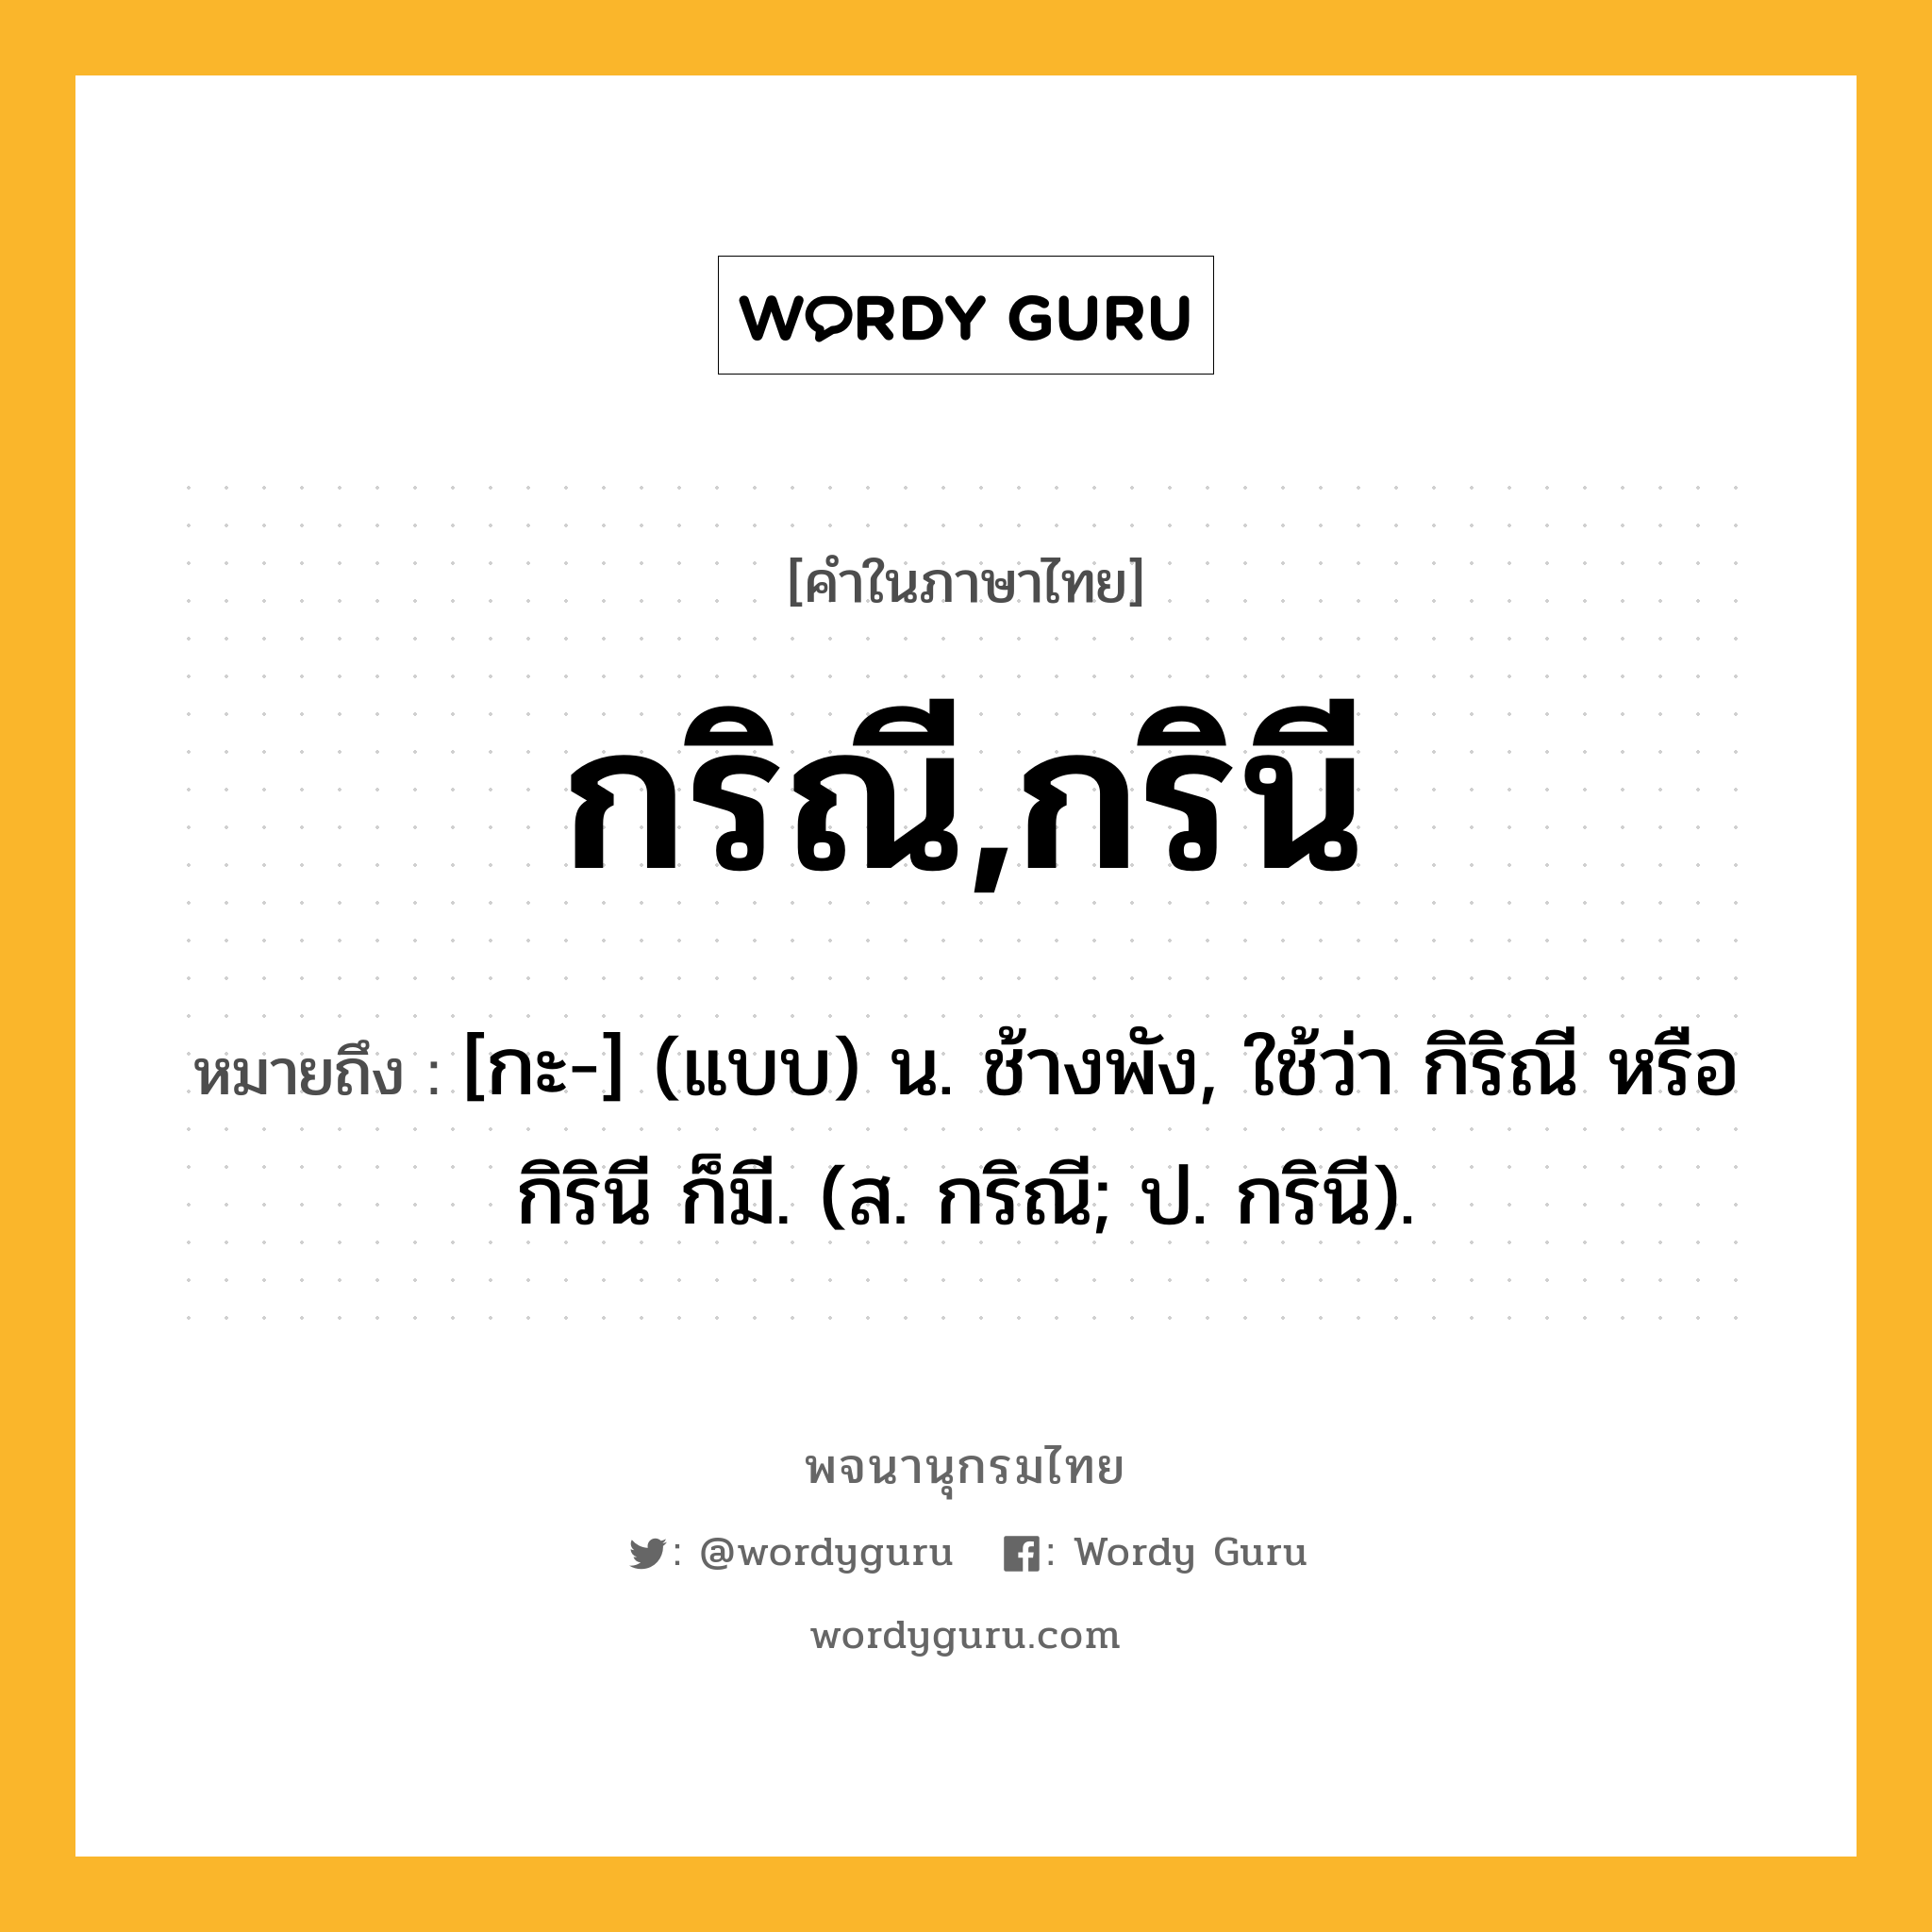 กริณี,กรินี ความหมาย หมายถึงอะไร?, คำในภาษาไทย กริณี,กรินี หมายถึง [กะ-] (แบบ) น. ช้างพัง, ใช้ว่า กิริณี หรือ กิรินี ก็มี. (ส. กริณี; ป. กรินี).